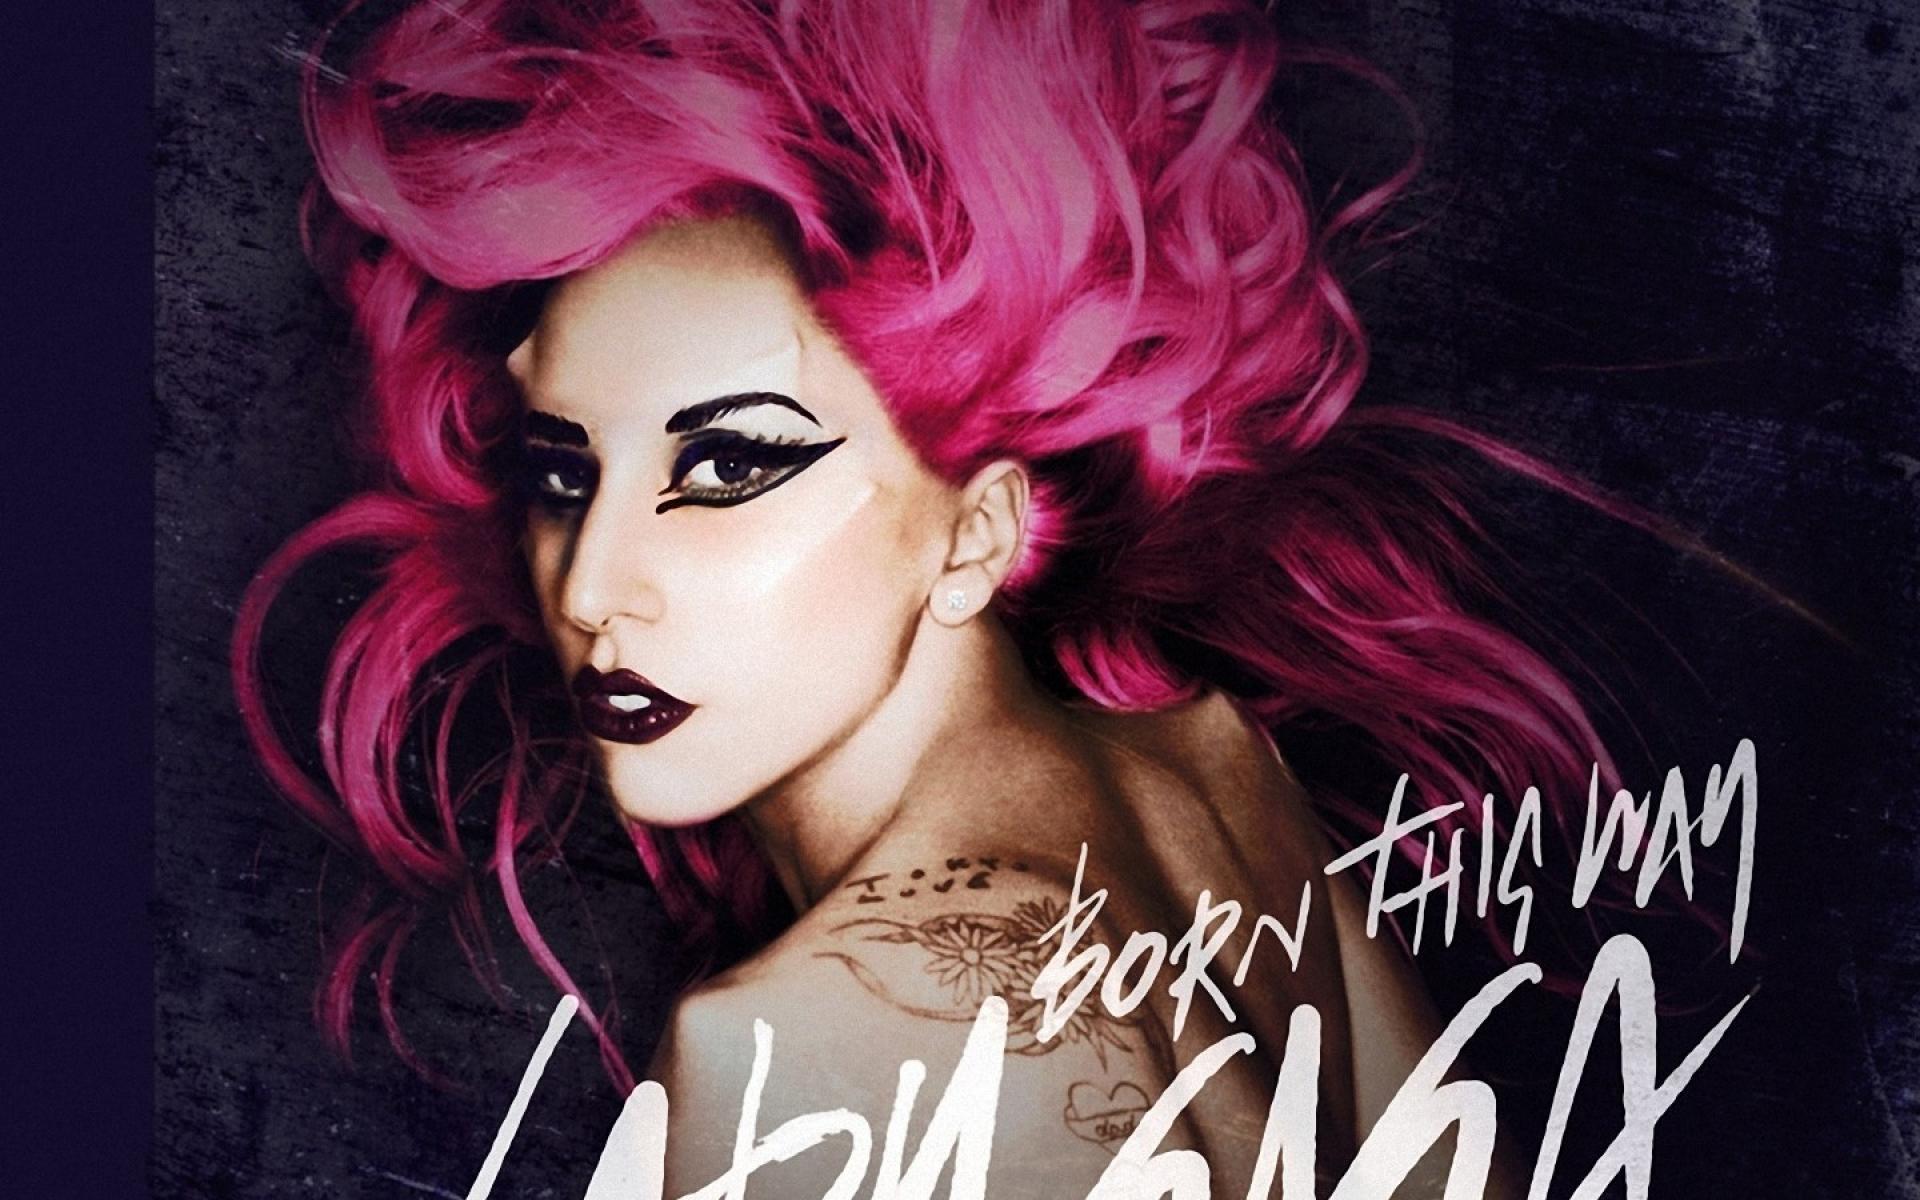 Lady gaga born this. Lady Gaga "born this way". Леди Гага рисунок. Леди Гага born this way Judas. Леди Гага Постер.